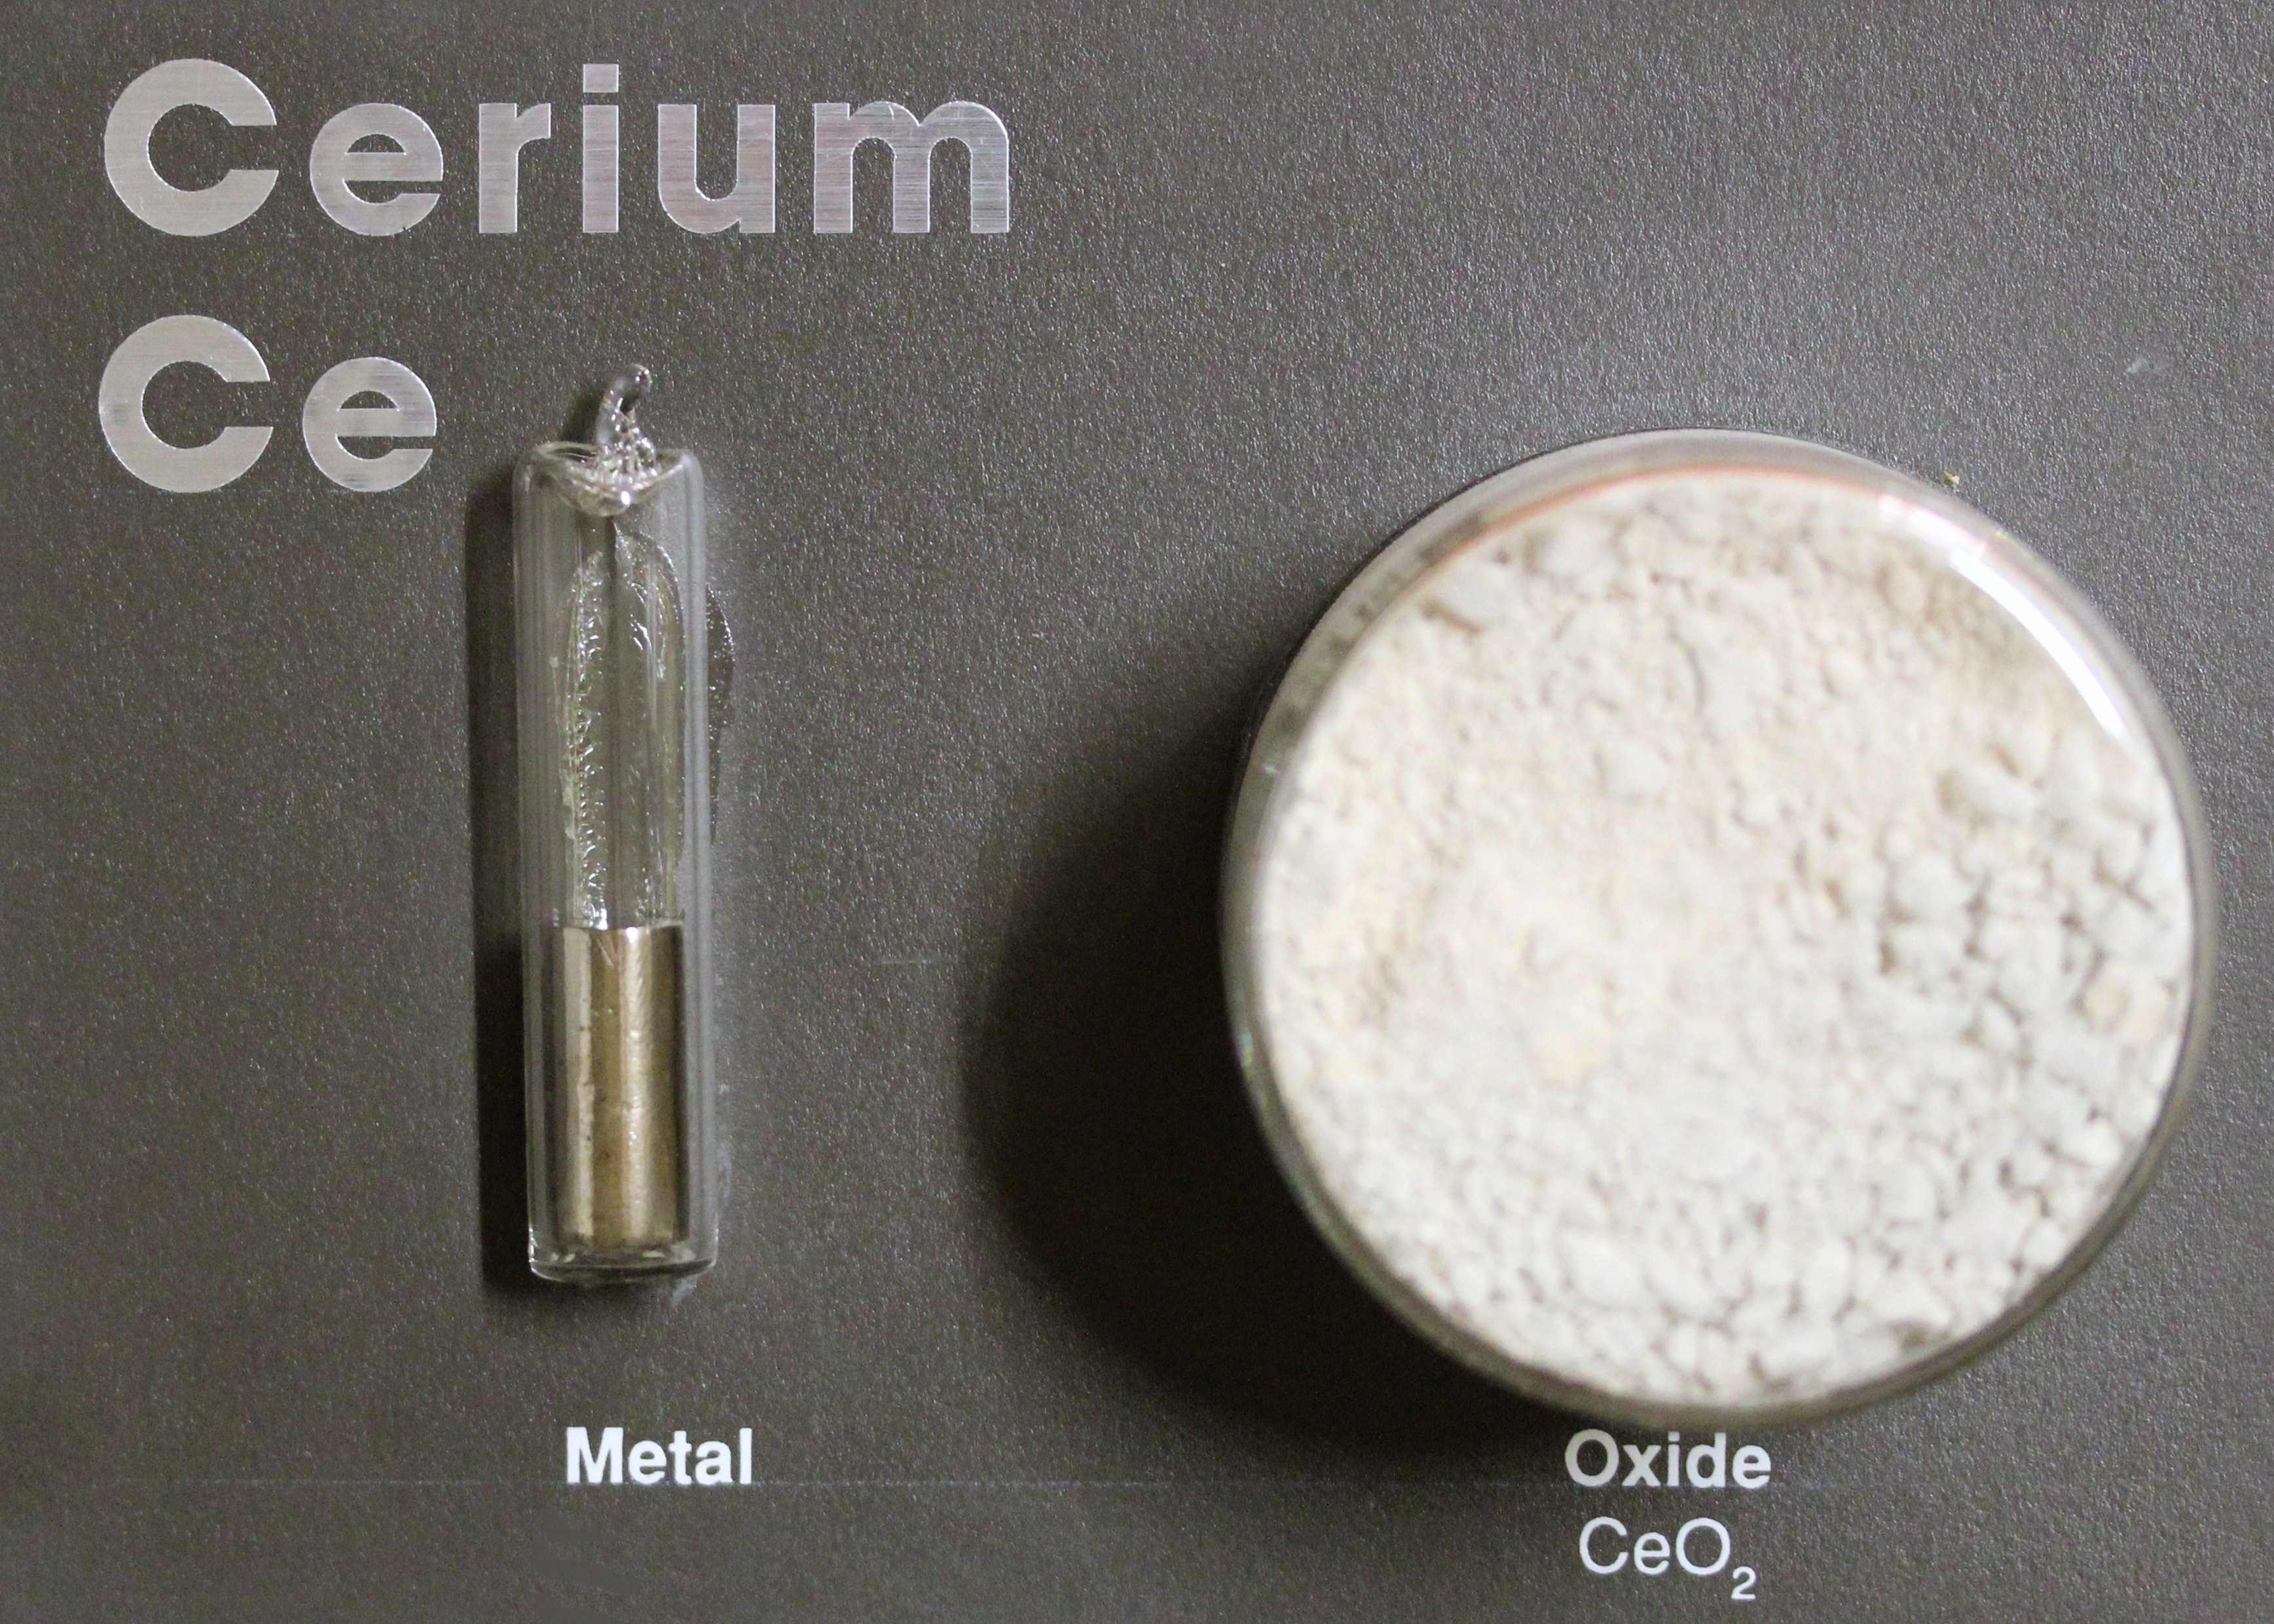 Cerium metal and oxide